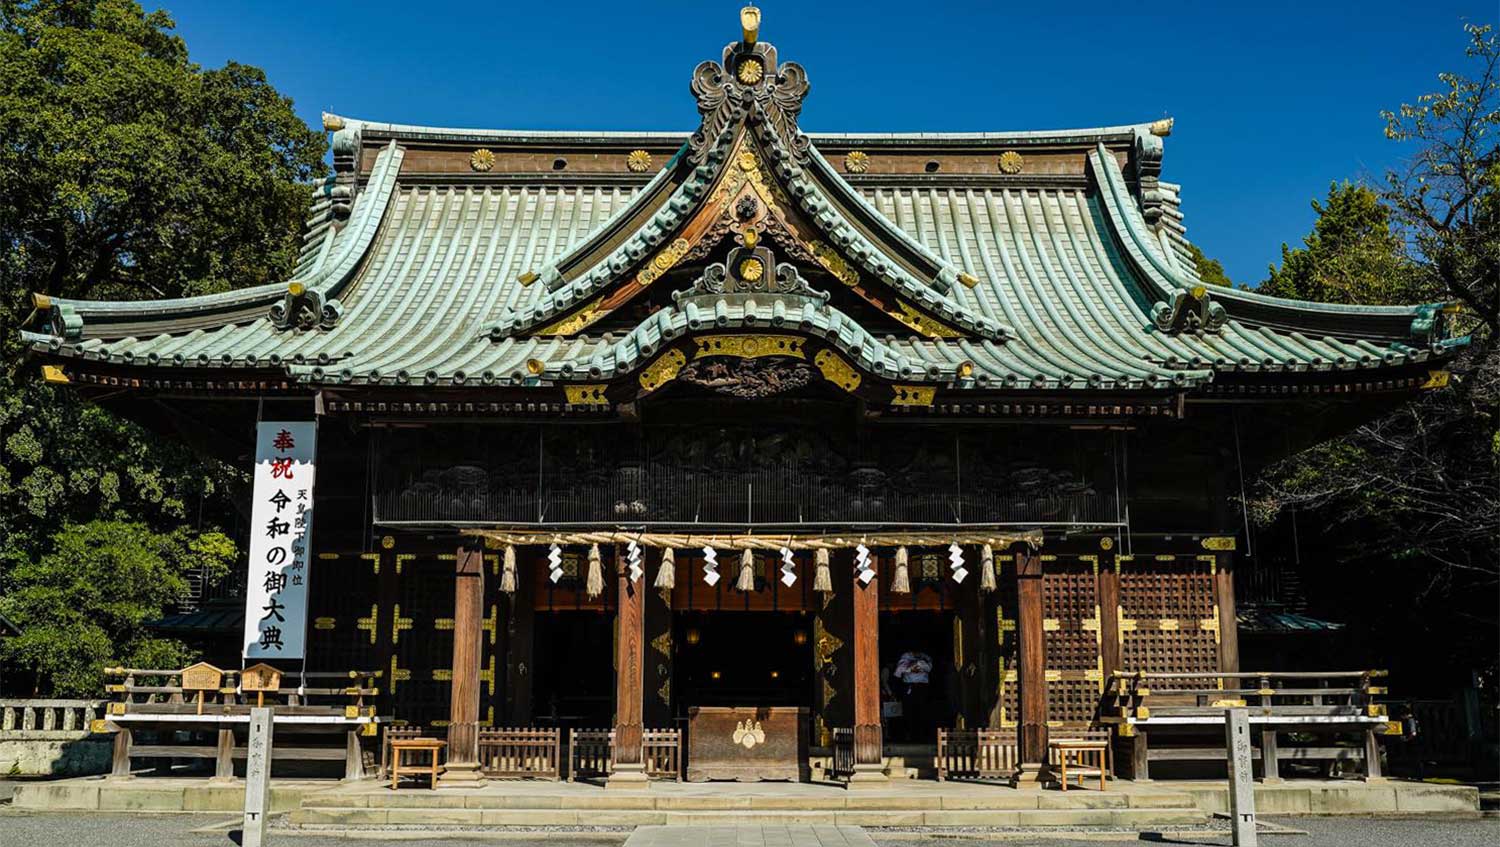 【三嶋大社】静岡伊豆観光最大級の名所の見所と境内各所を日本一わかりやすくまとめた